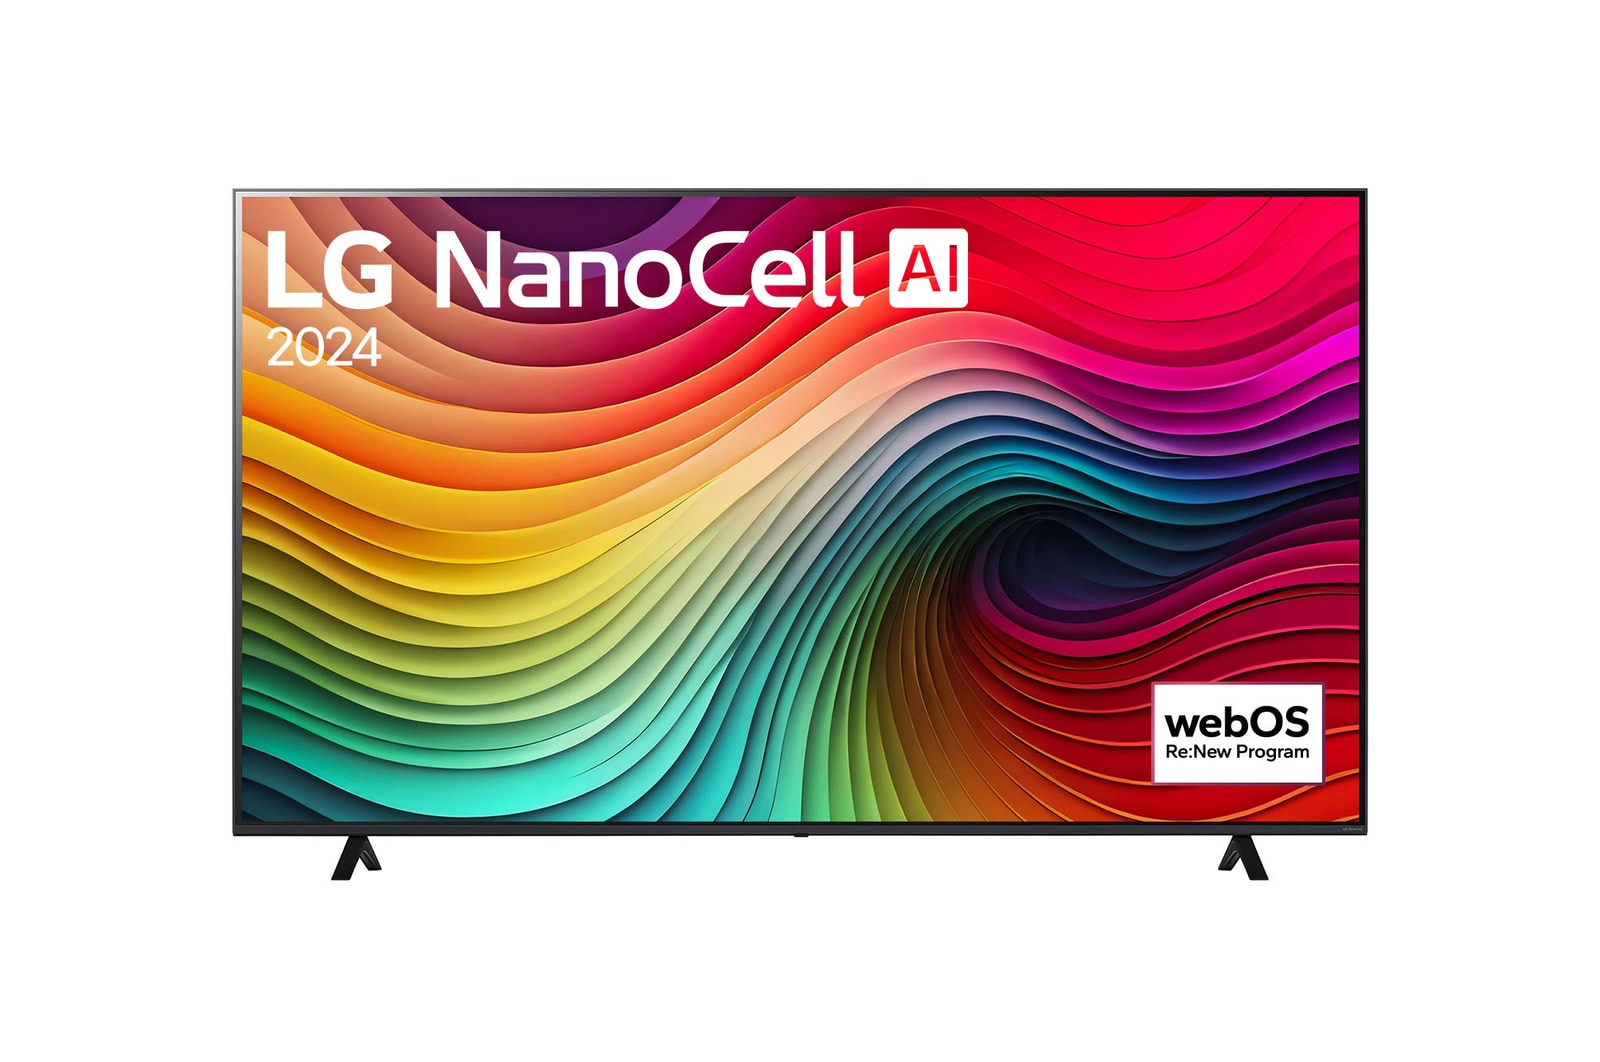 LG 75" LG NanoCell AI NANO81 4K Smart TV 2024, 75NANO81T6A